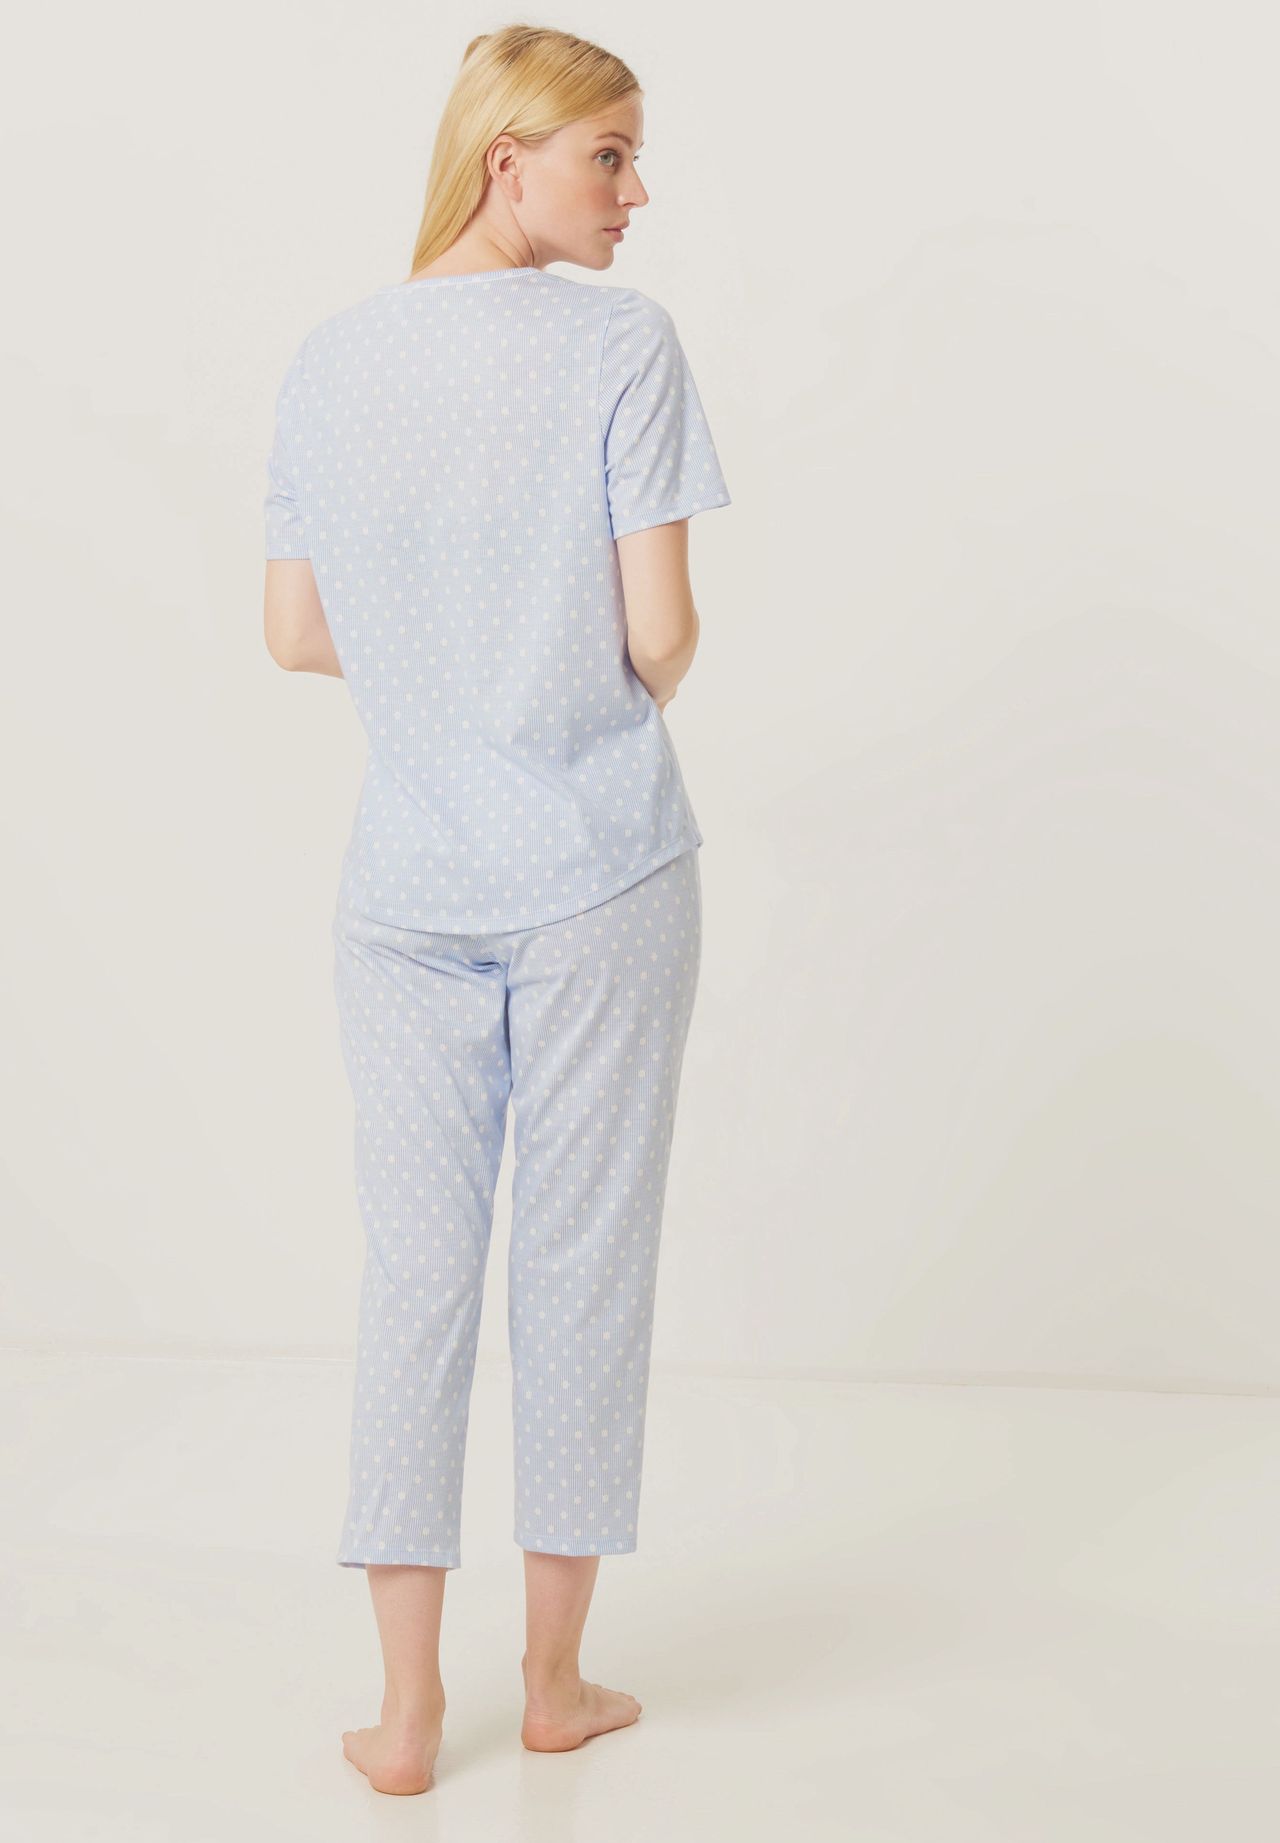 Damen Wäsche DR. SCHELLER Smart Casual Capri-Pyjama, Kurzarm, Punkte, Split-Neck, für Damen